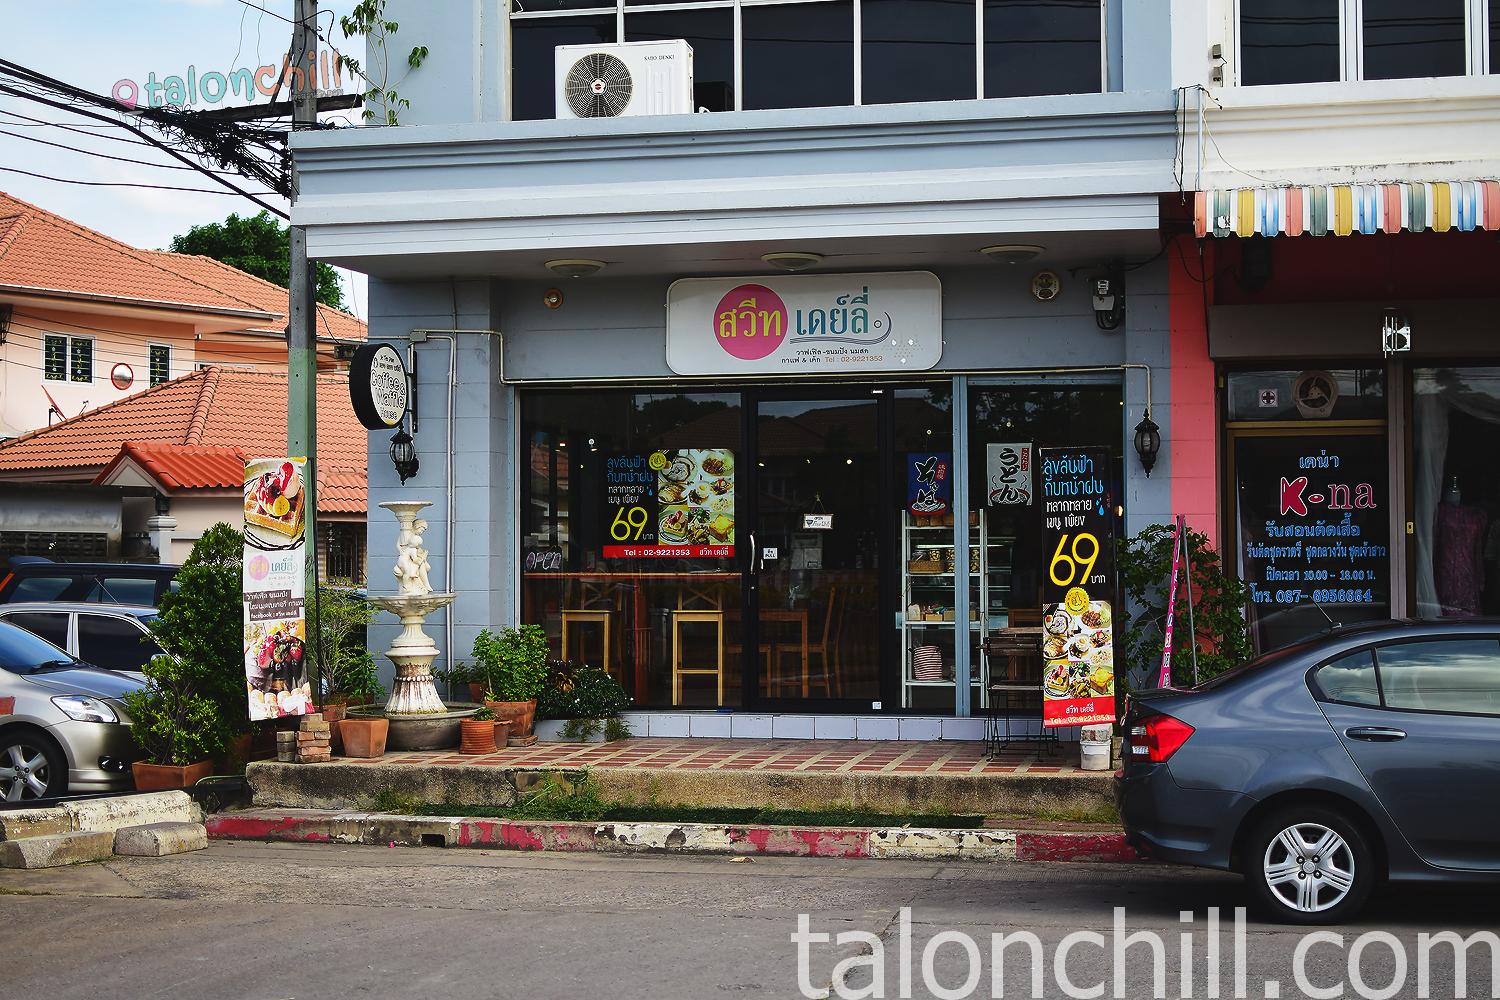 [ตะลอนกิน] ร้านสวีท เดย์ลี่ (Sweet Daily Cafe) หมู่บ้านมณียา 2 ซอยท่าอิฐ